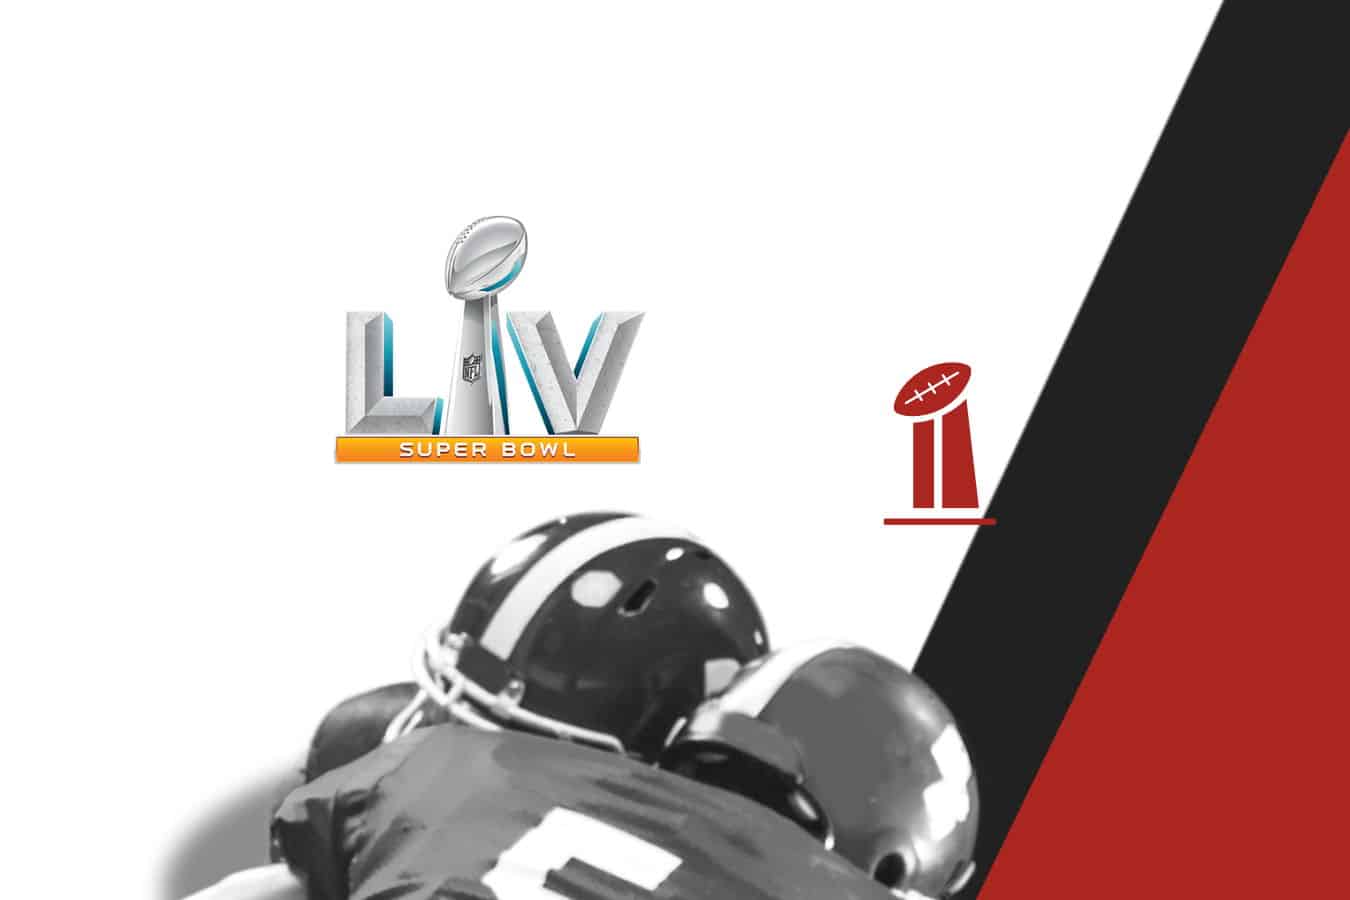 Who Will Win Super Bowl LV?